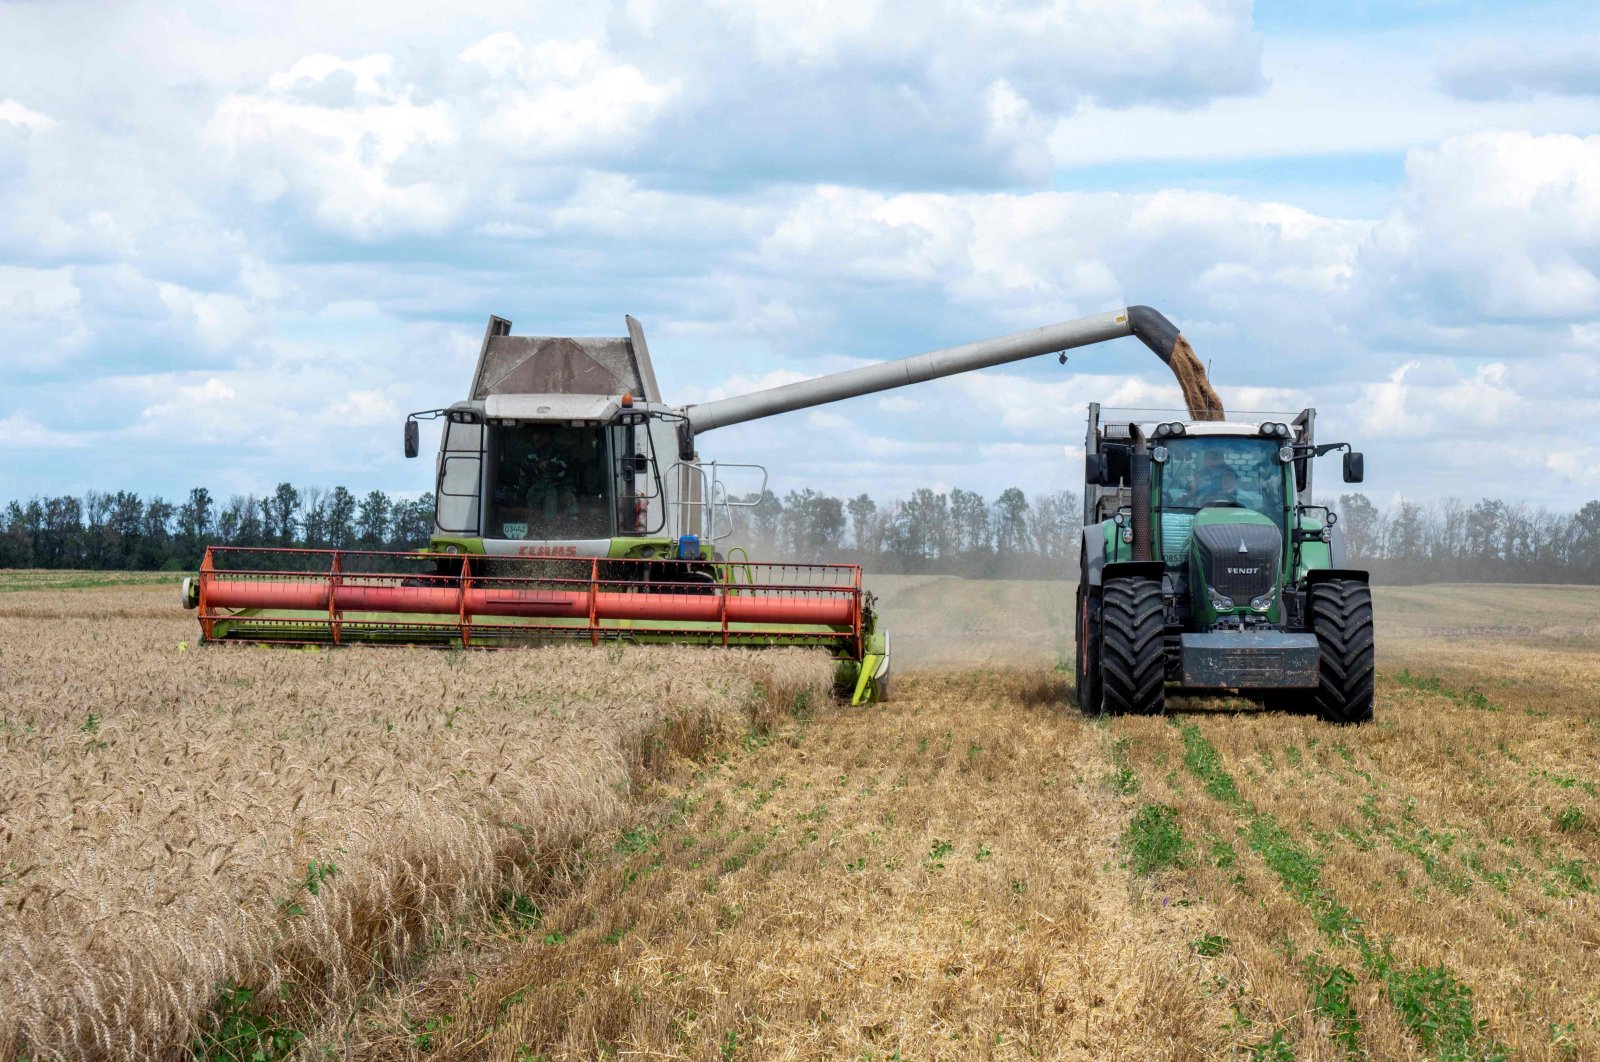 Farmers harvest a wheat field in the Kharkiv region, Ukraine, July 19, 2022. (AFP Photo)